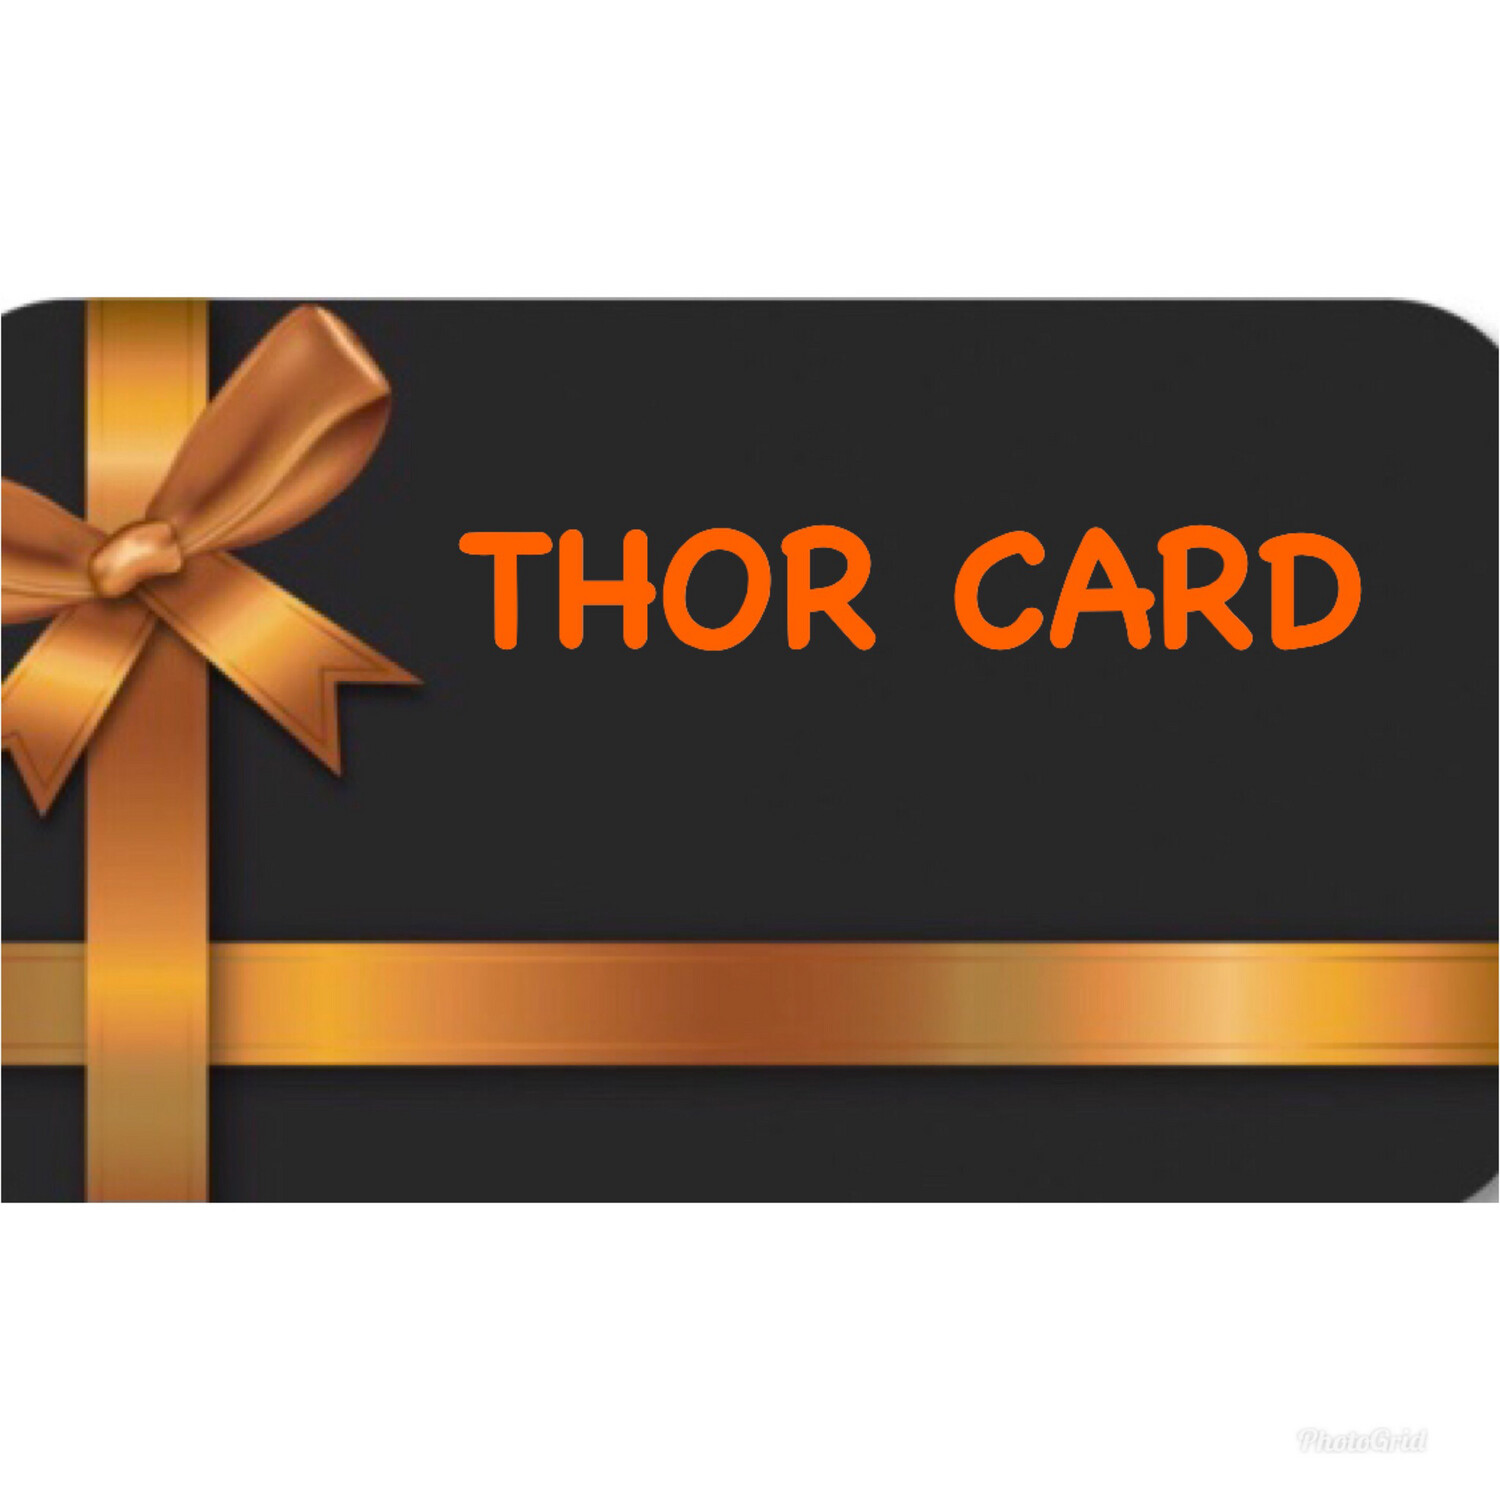 Thor Card, carta digitale che si puo' regalare come gift card selezionando l'importo desiderato